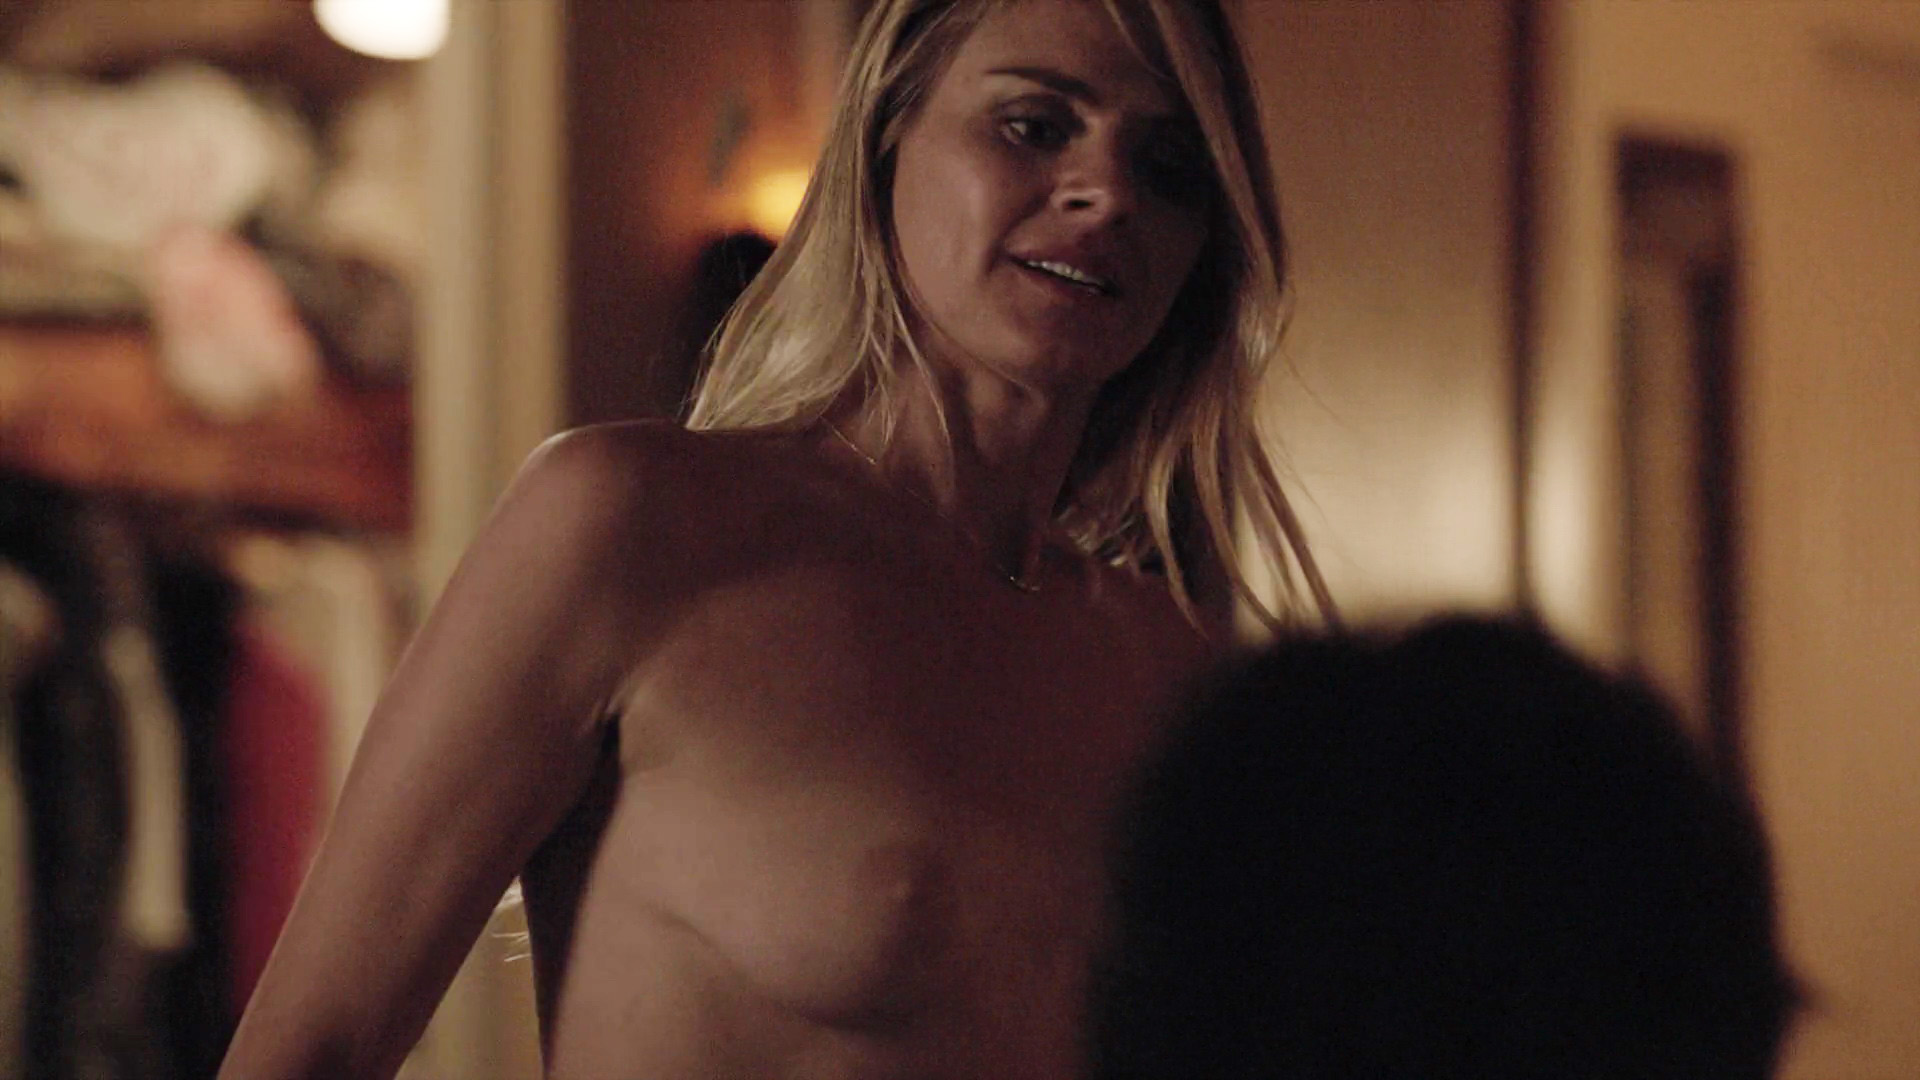 Eliza coupe nude casual - Eliza Coupe Nude Sex Scene in Casual.